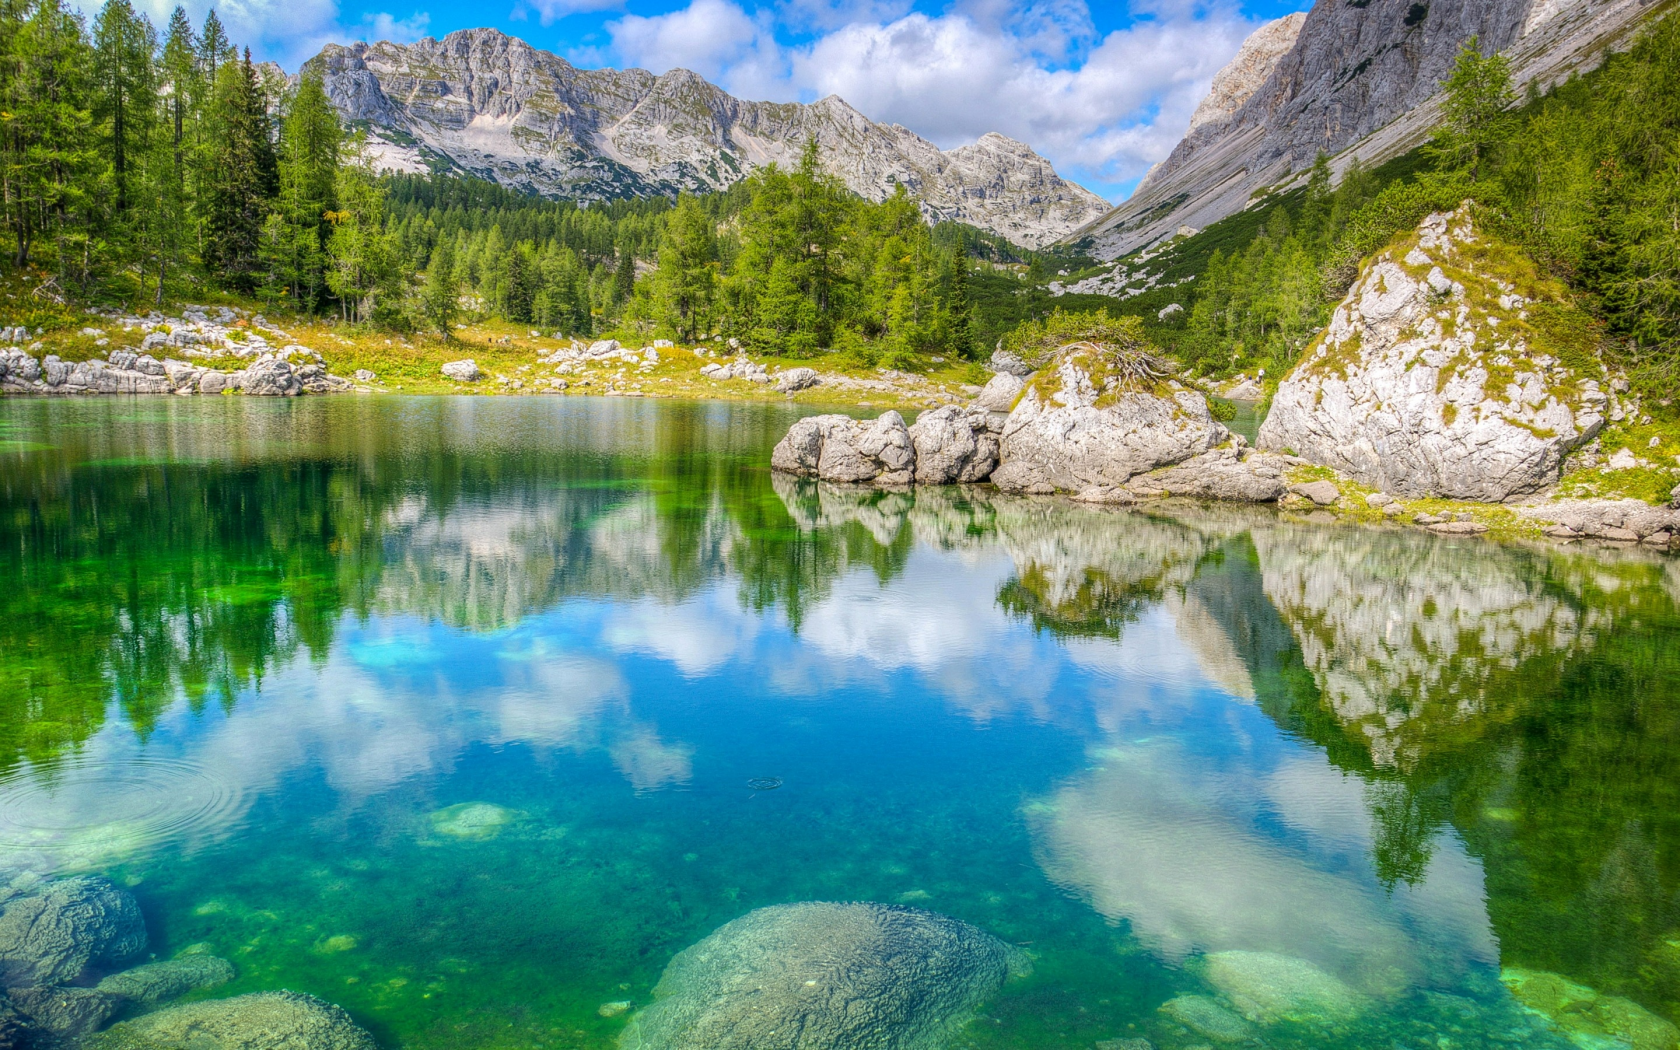 Словения, Triglav National Park, горы, лес, озеро, камни, деревья